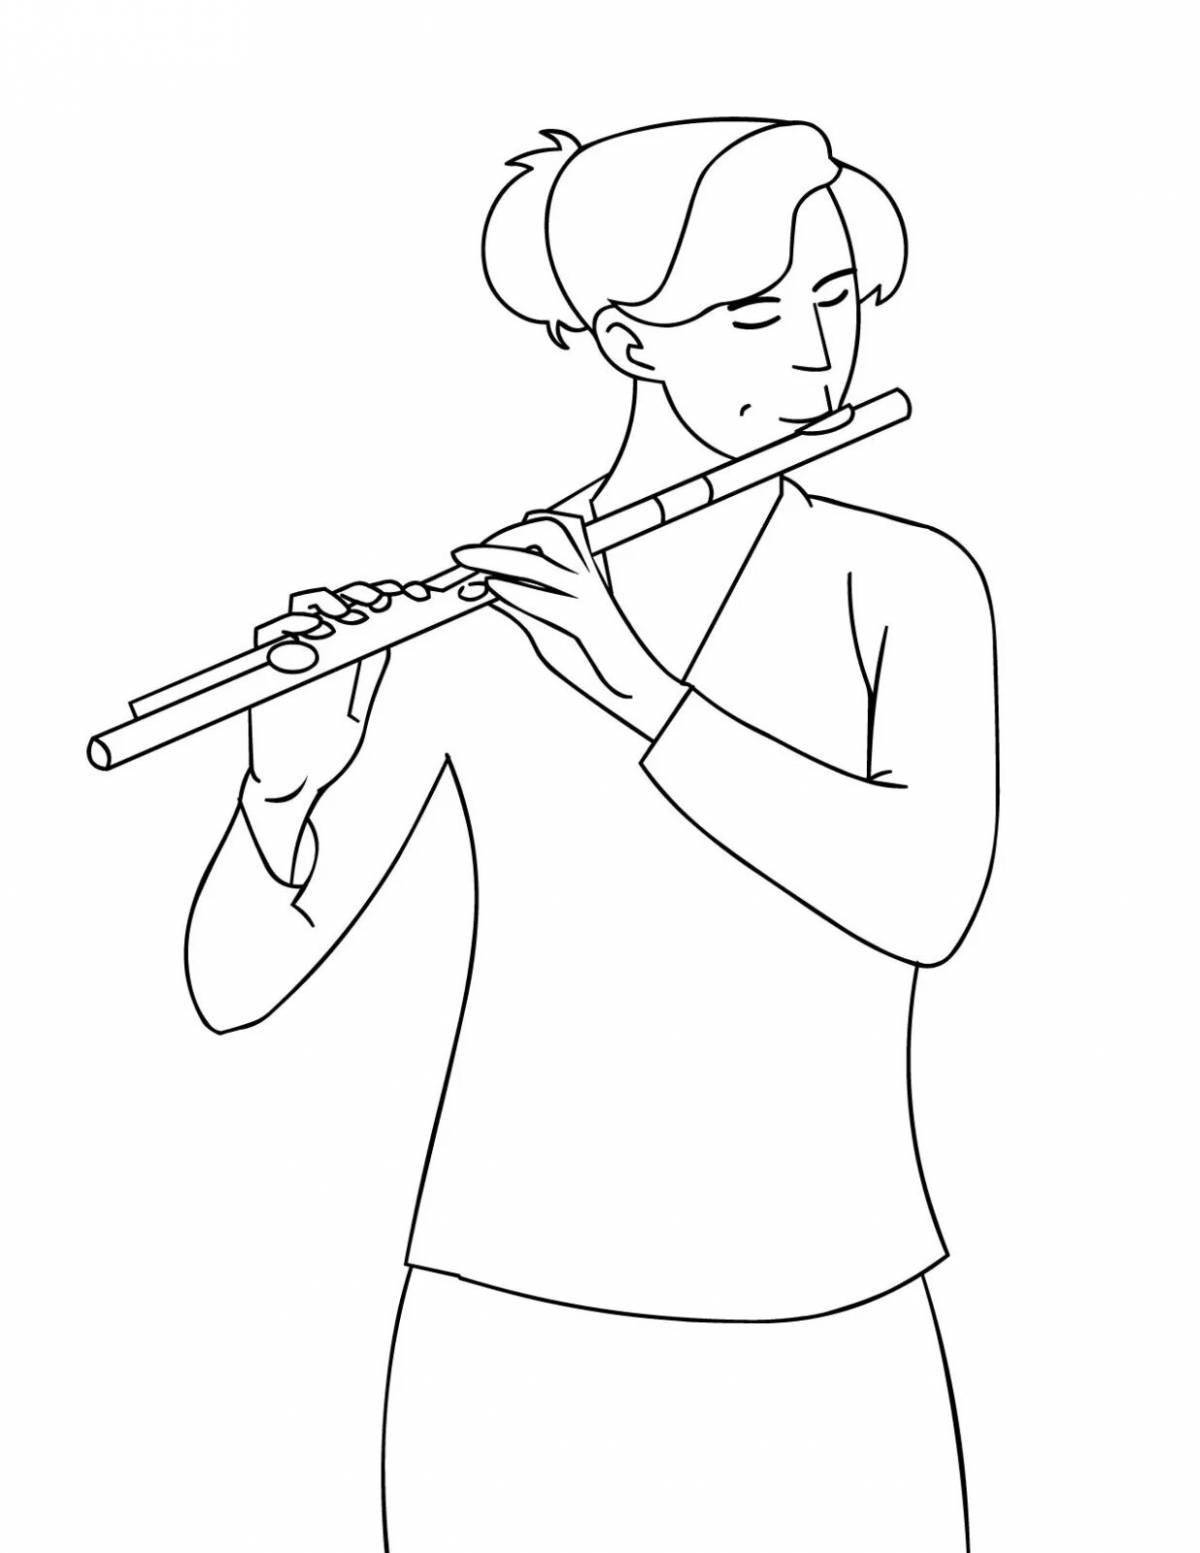 Раскраска сказочный музыкальный инструмент флейта